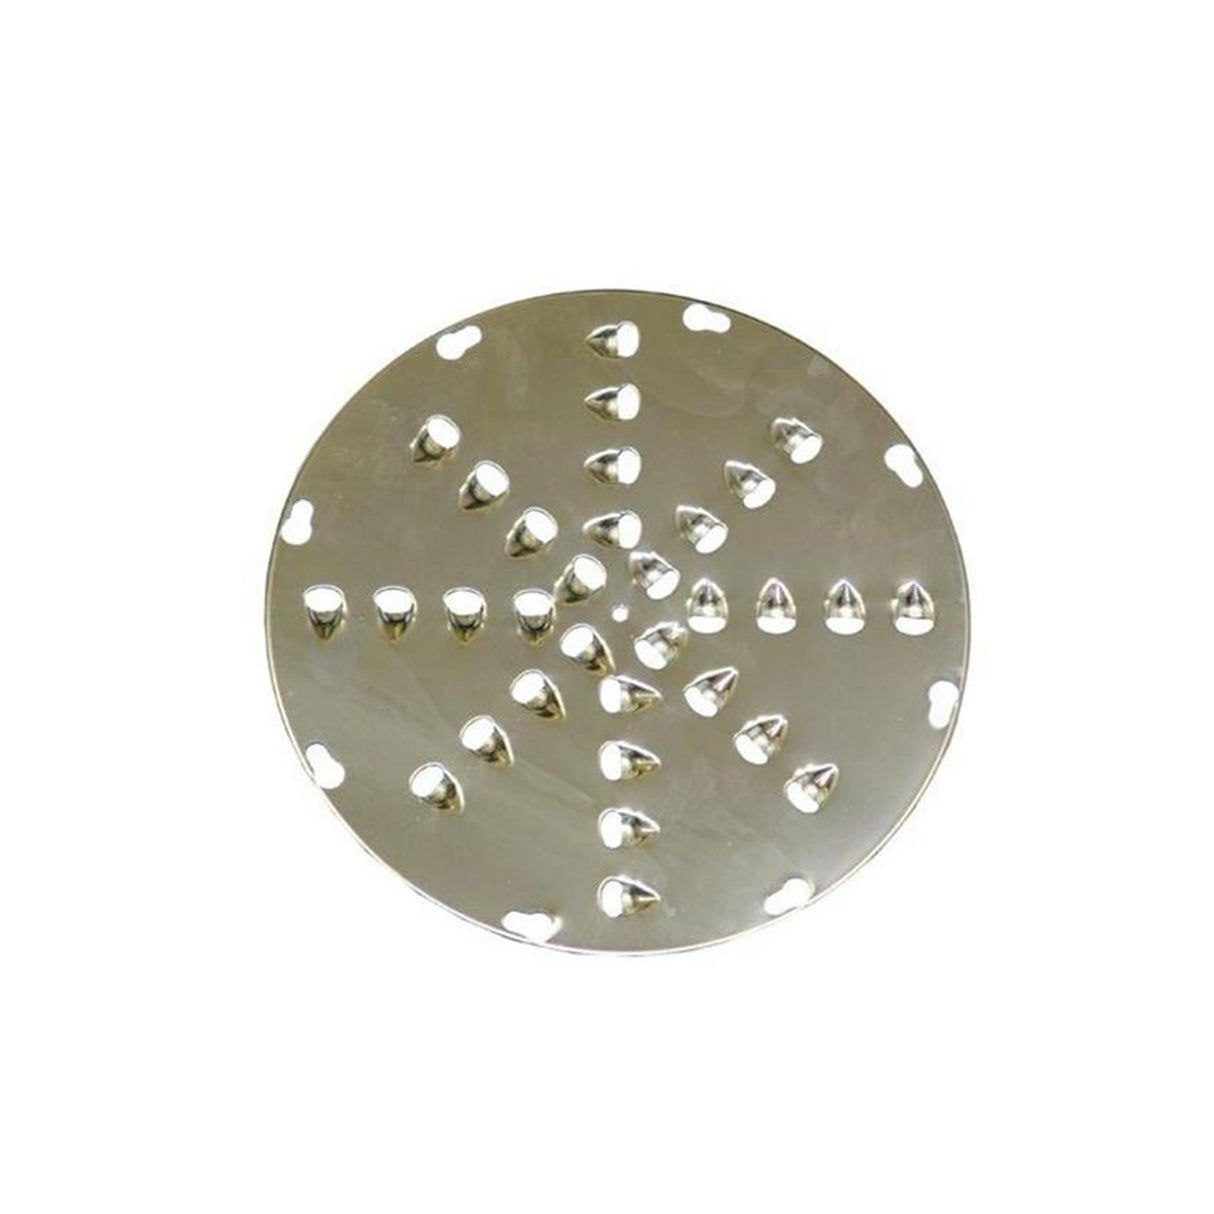 UVS-9120 | S/Steel Shredder Disc, 1/2" Holes